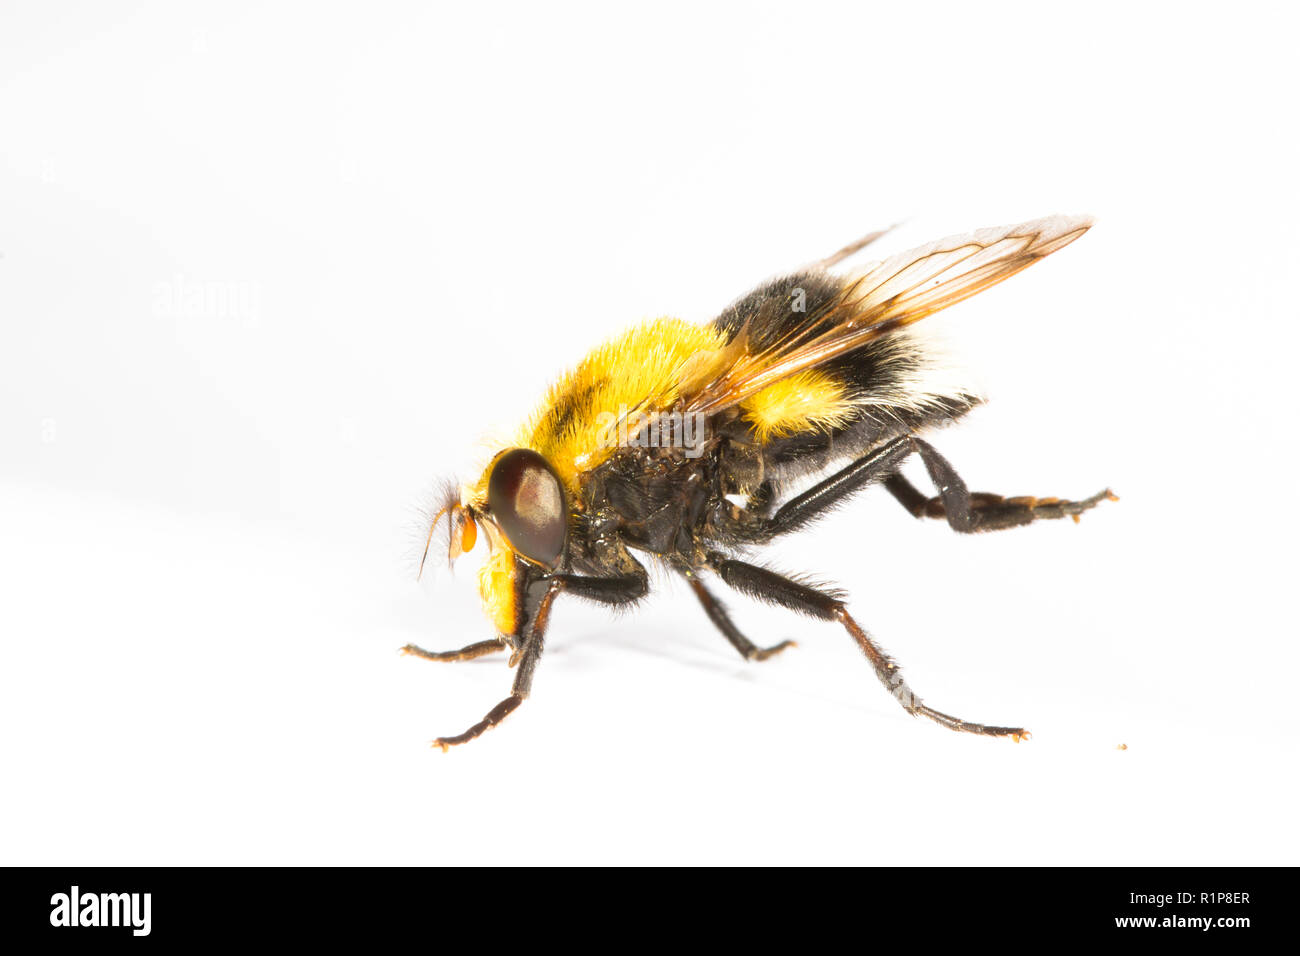 Bumblebee Hoverfly (Volucella bombylans) femelle adulte photographié sur un fond blanc. Powys, Pays de Galles. Juillet. Banque D'Images